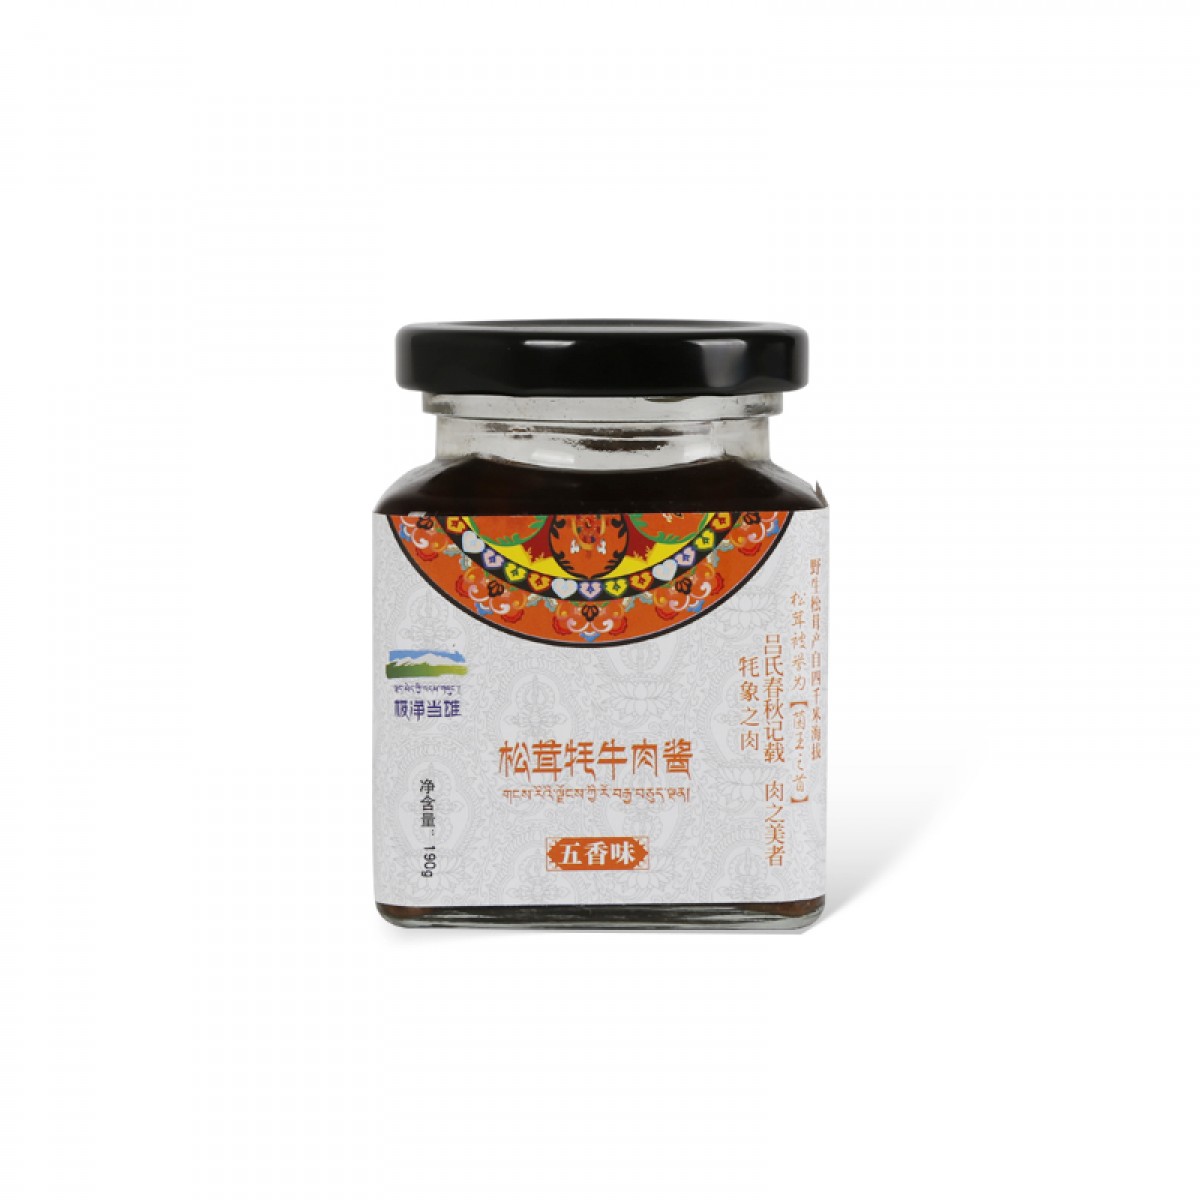 西藏牦牛肉松茸酱(五香) *2